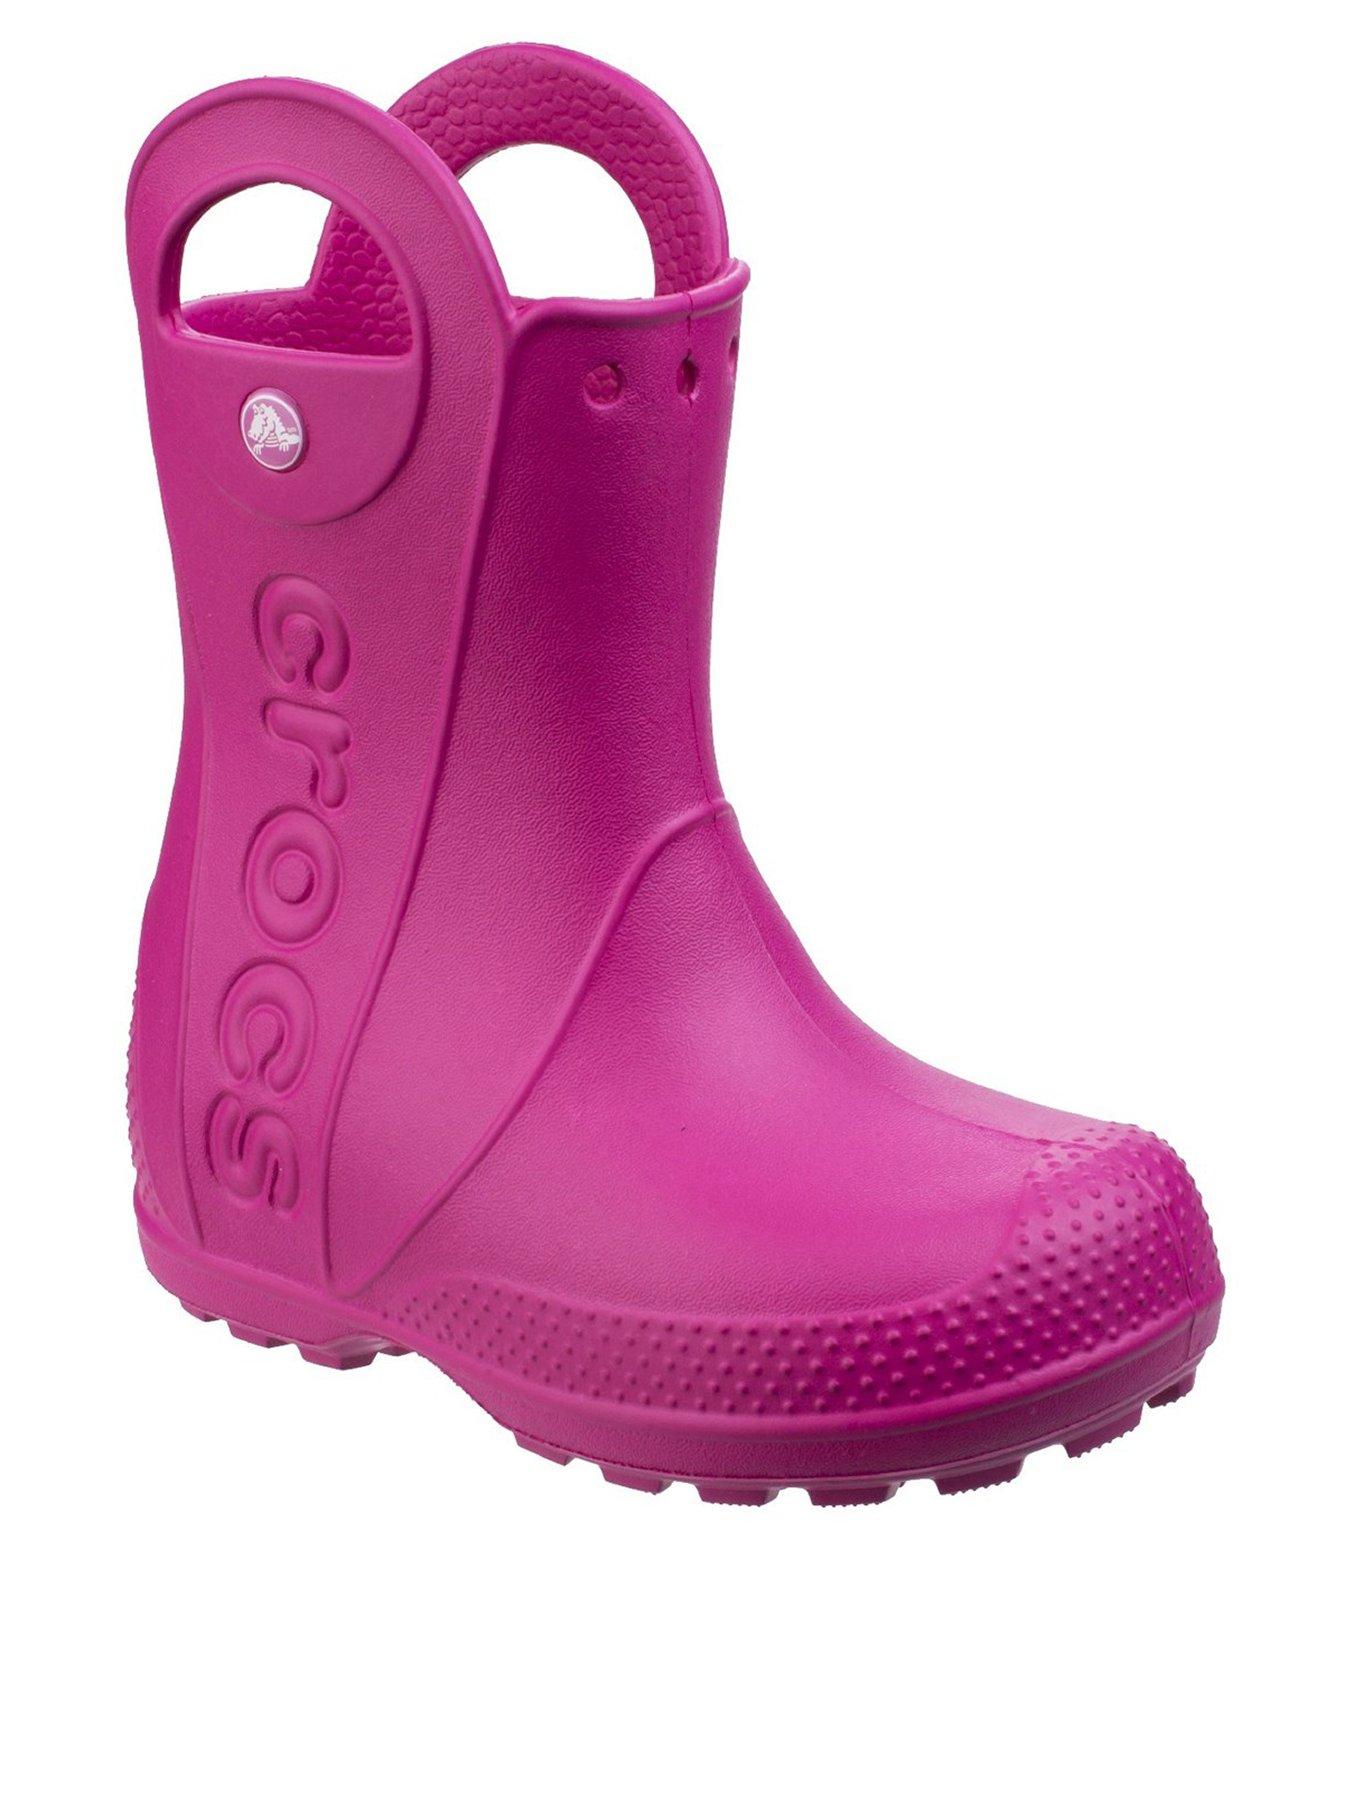 crocs girls boots